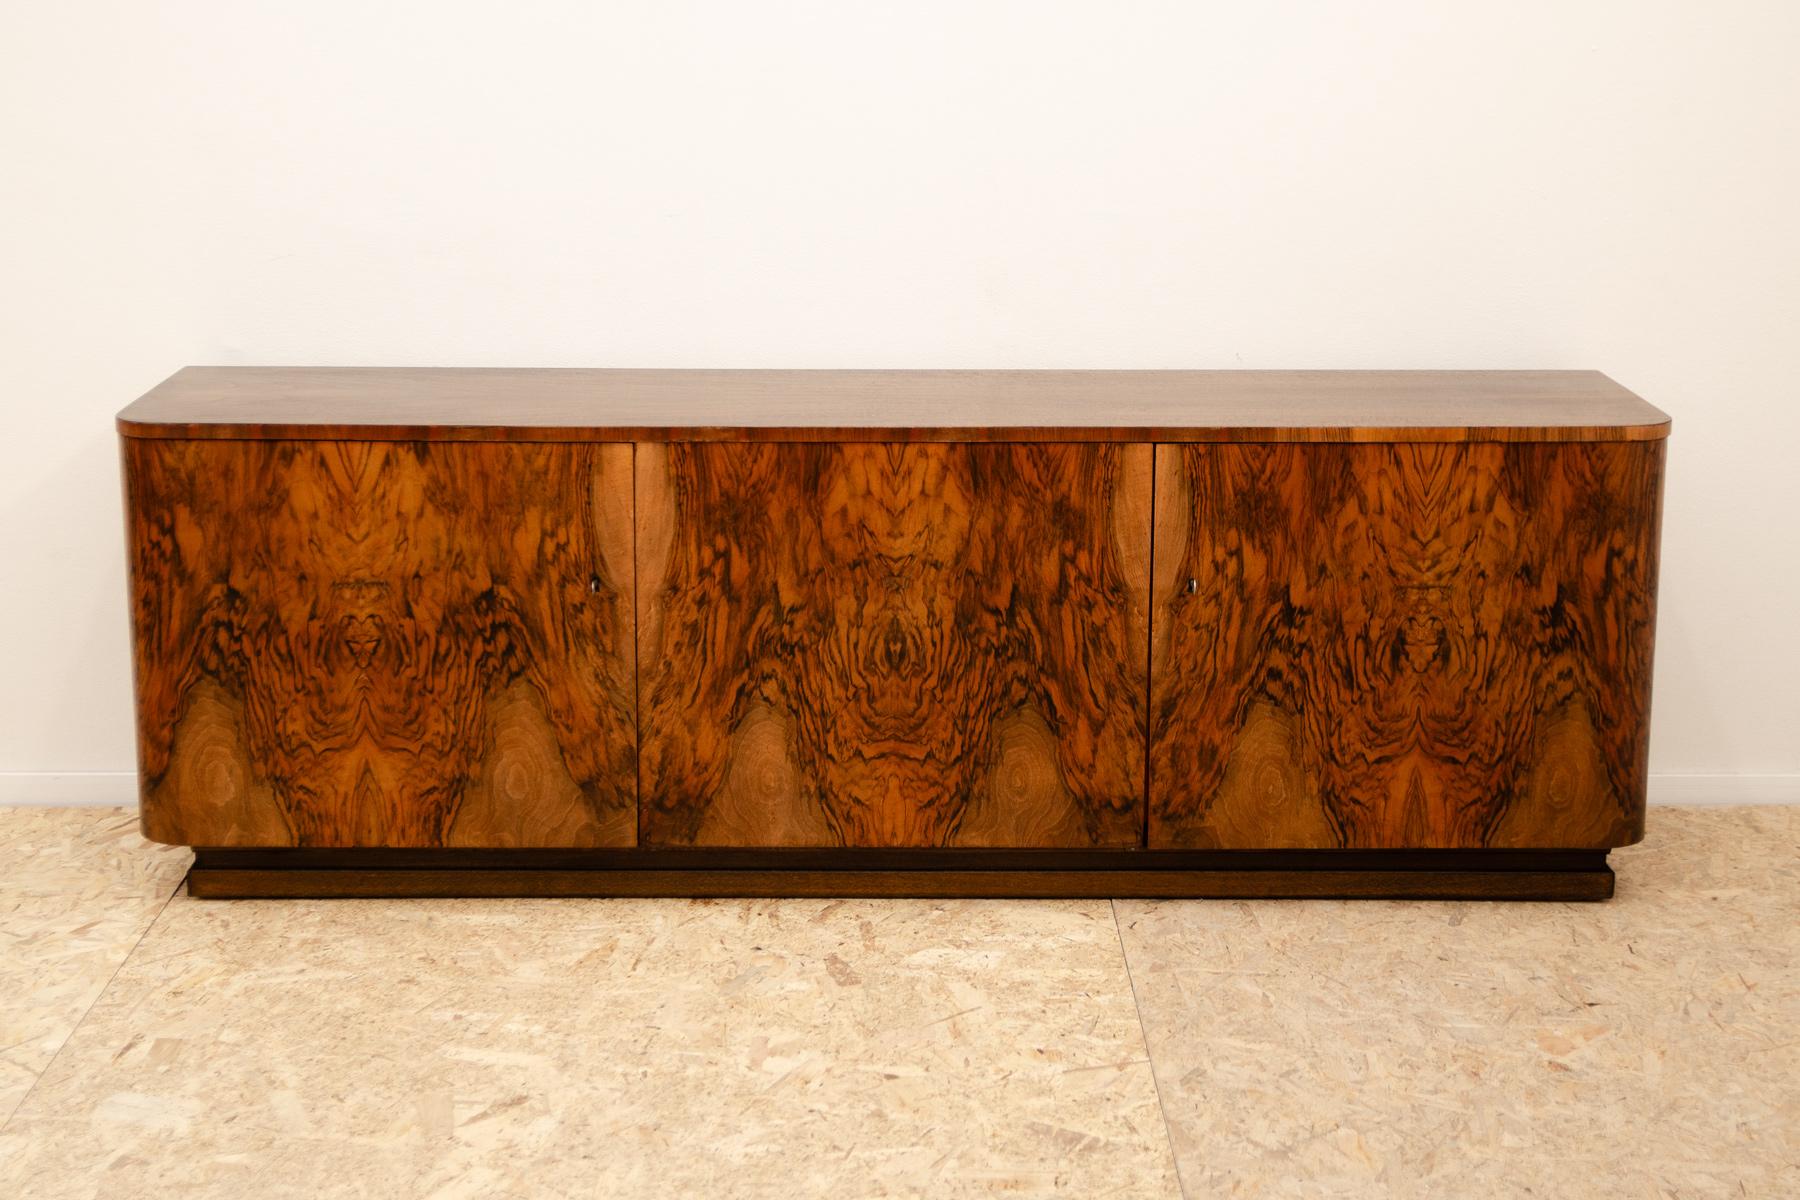 Dieses riesige ART DECO-Sideboard wurde in den 1930er Jahren in der ehemaligen Tschechoslowakei hergestellt.
Das Stück hat eine schöne abgerundete Formen, massive Holzsockel auf dem Boden.
Er ist aus Nussbaumholz gefertigt und mit einem schönen